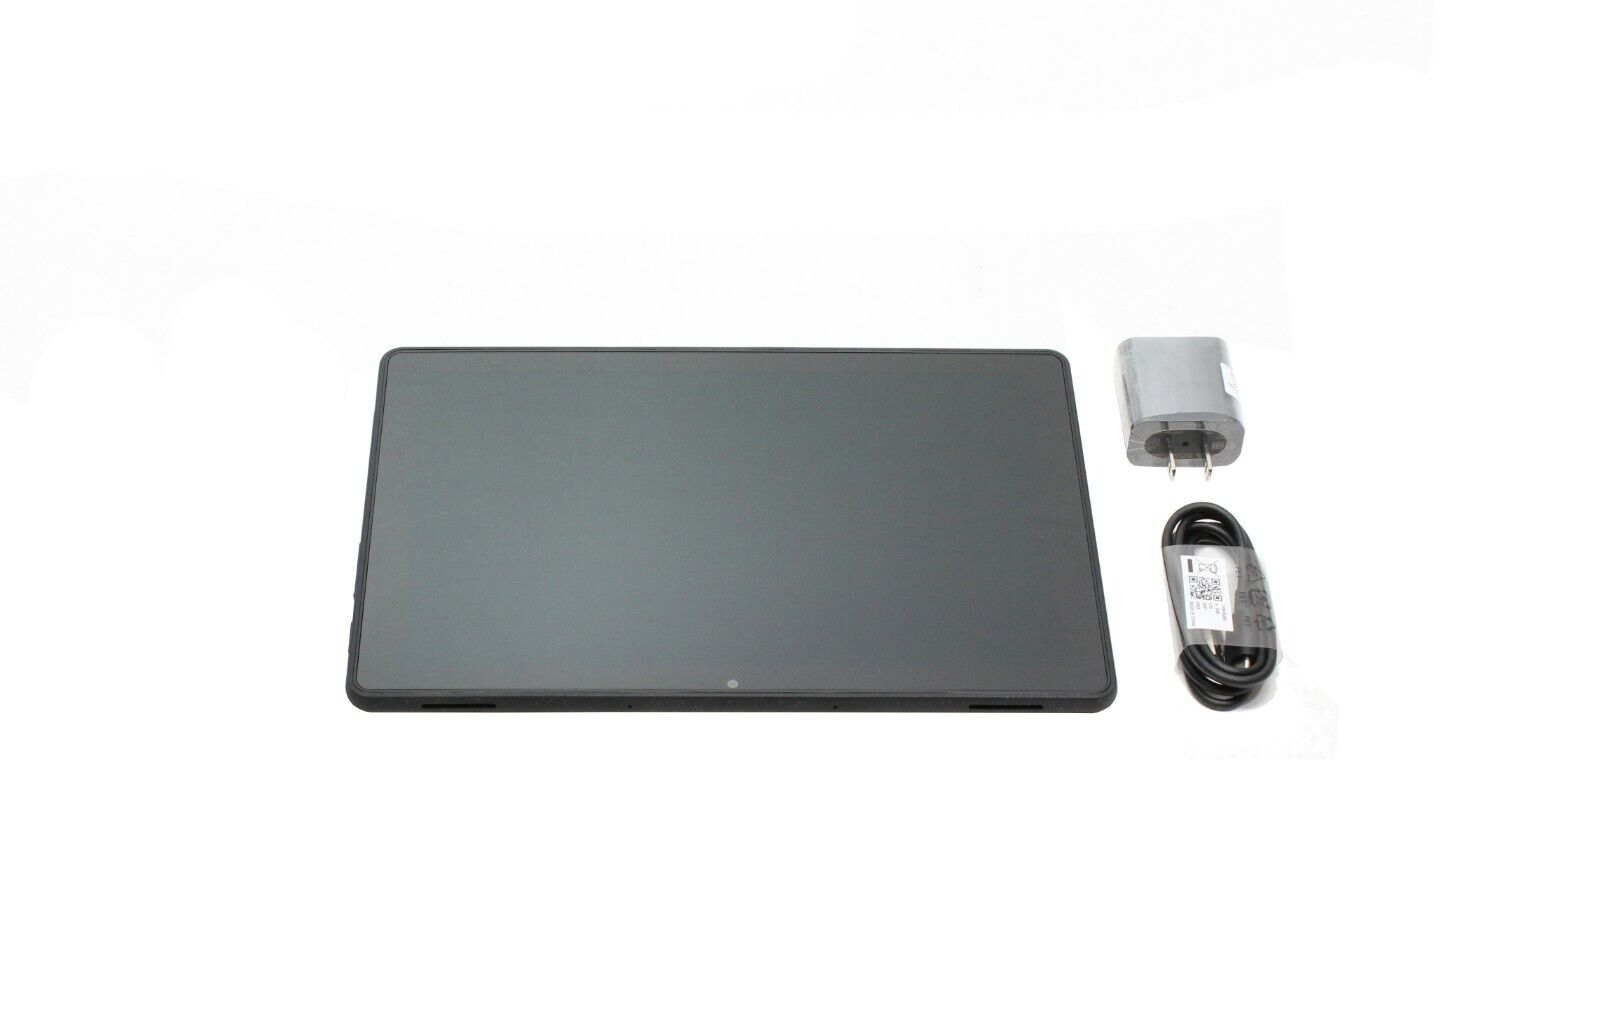 Lenovo 10e Chromebook Tablet 10.1" MT8183 4GB RAM 32GB eMMC 82AM0002US - Click Image to Close